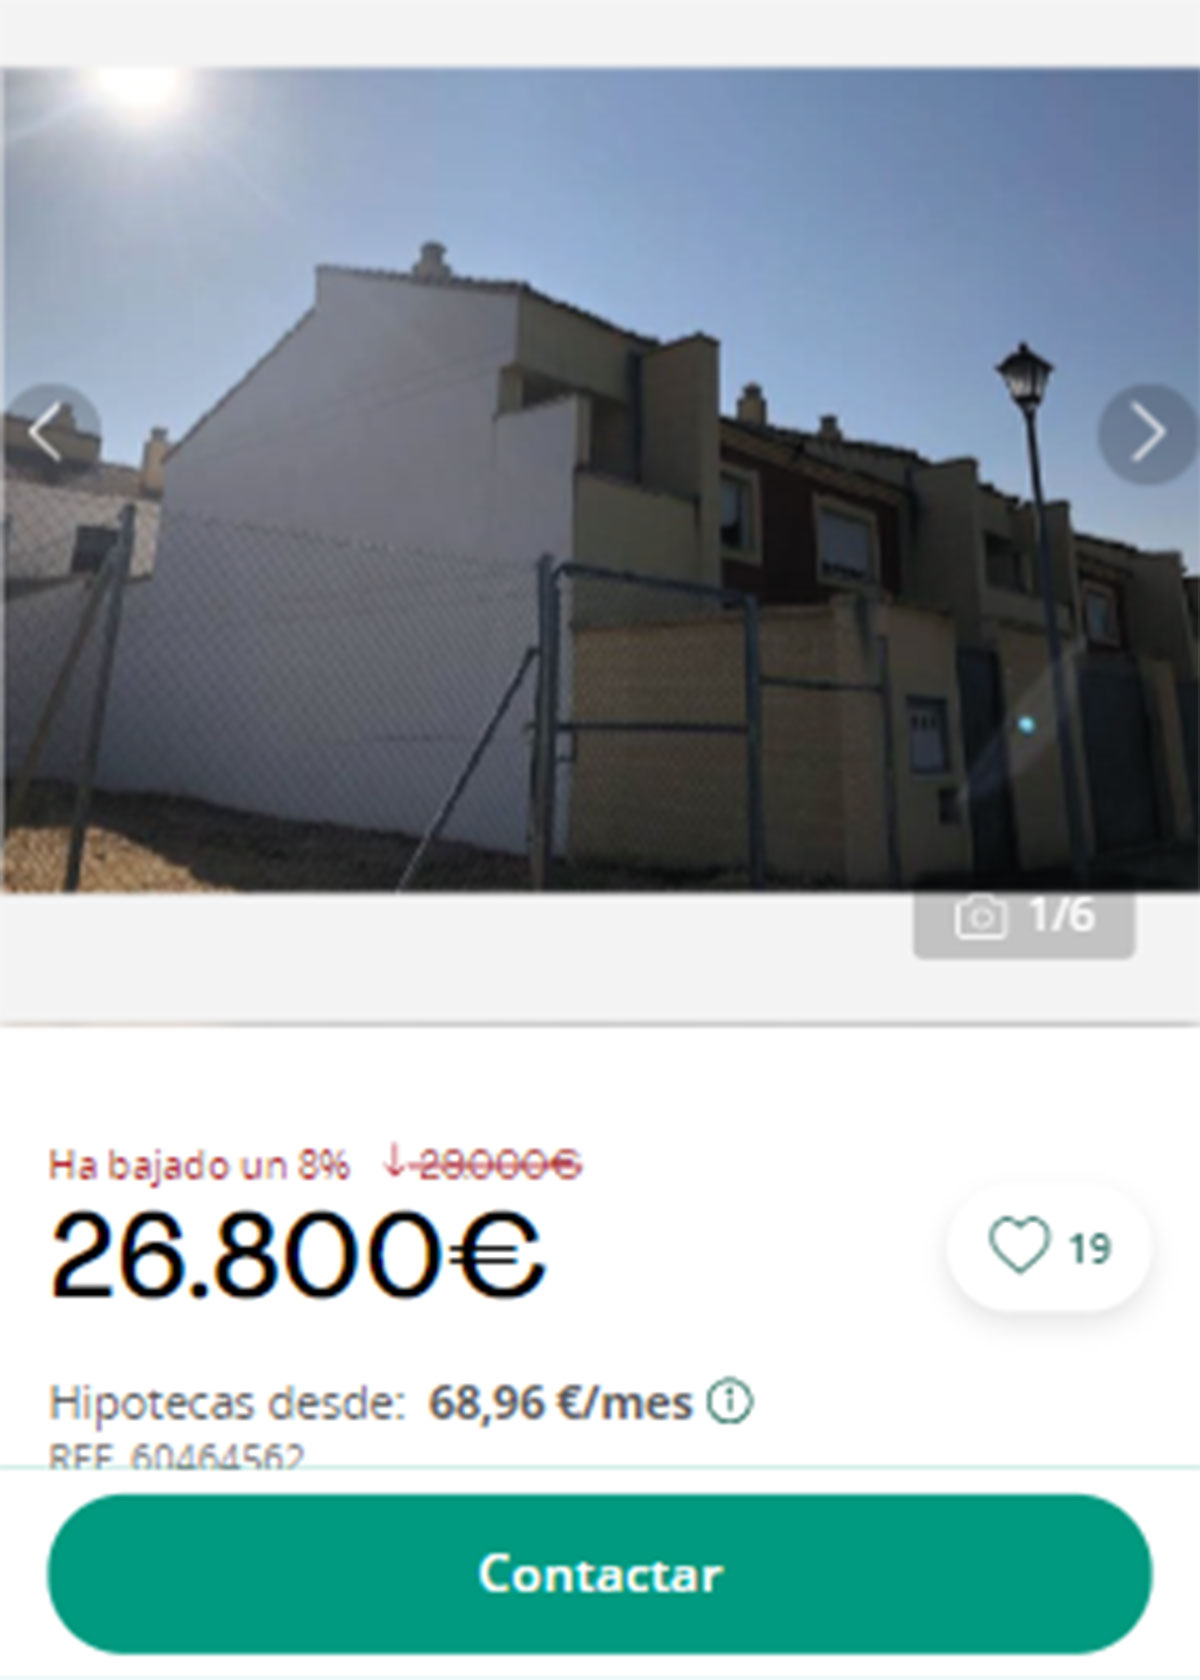 Piso en pueblos de Alicante por 26.800 euros